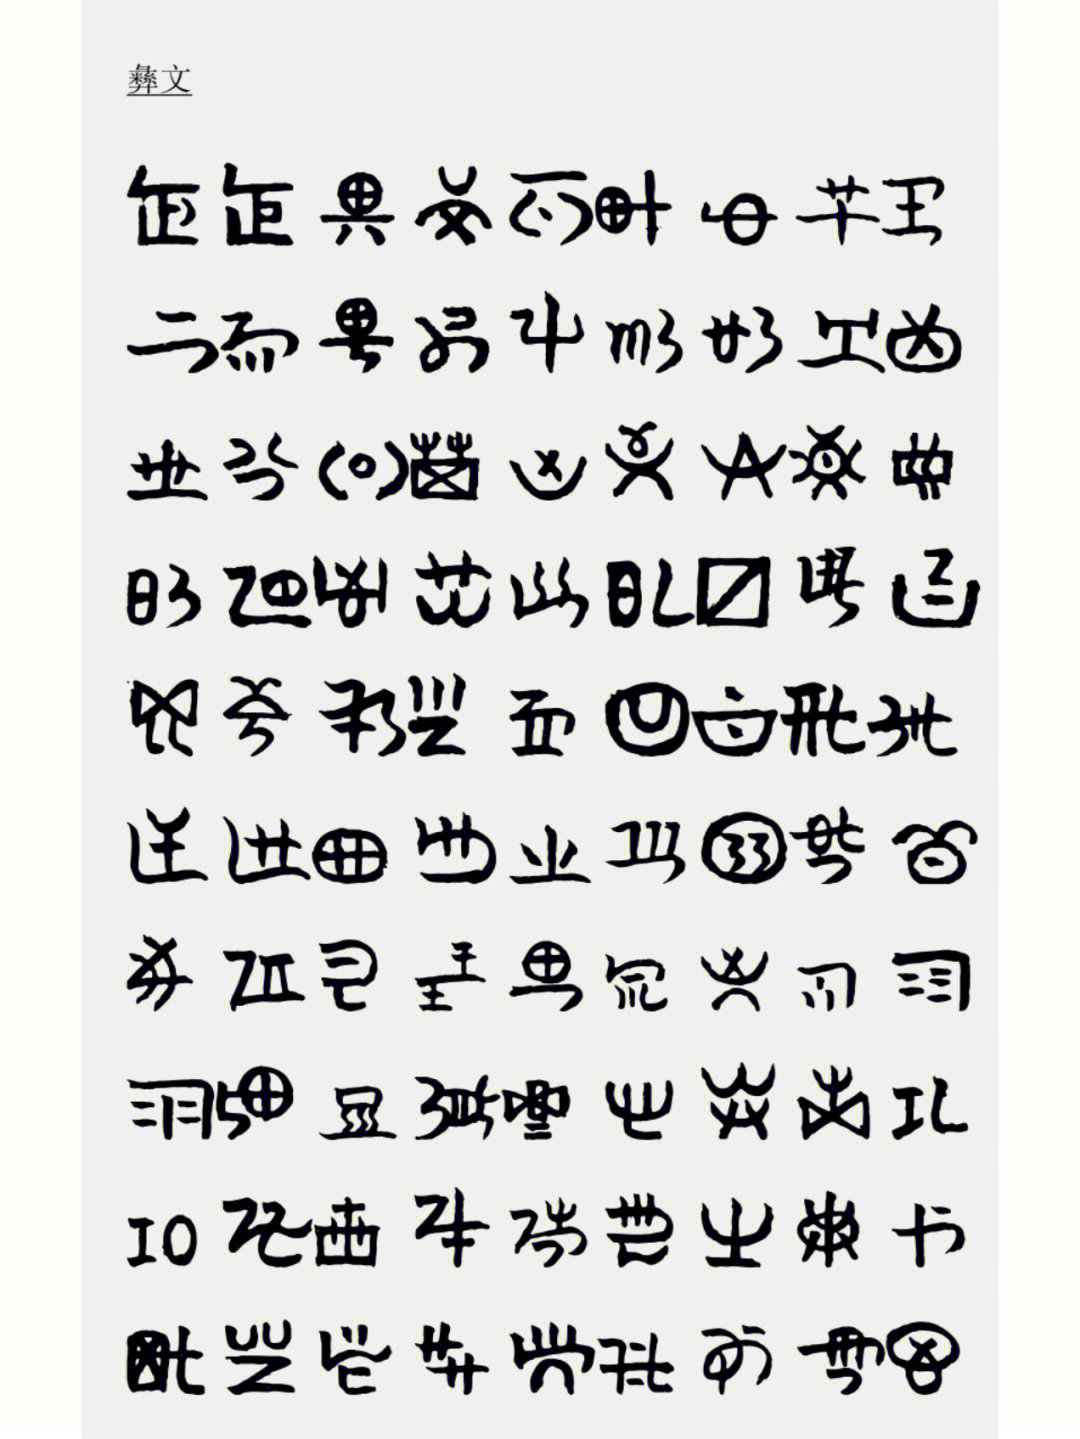 彝文与汉字对照表图片